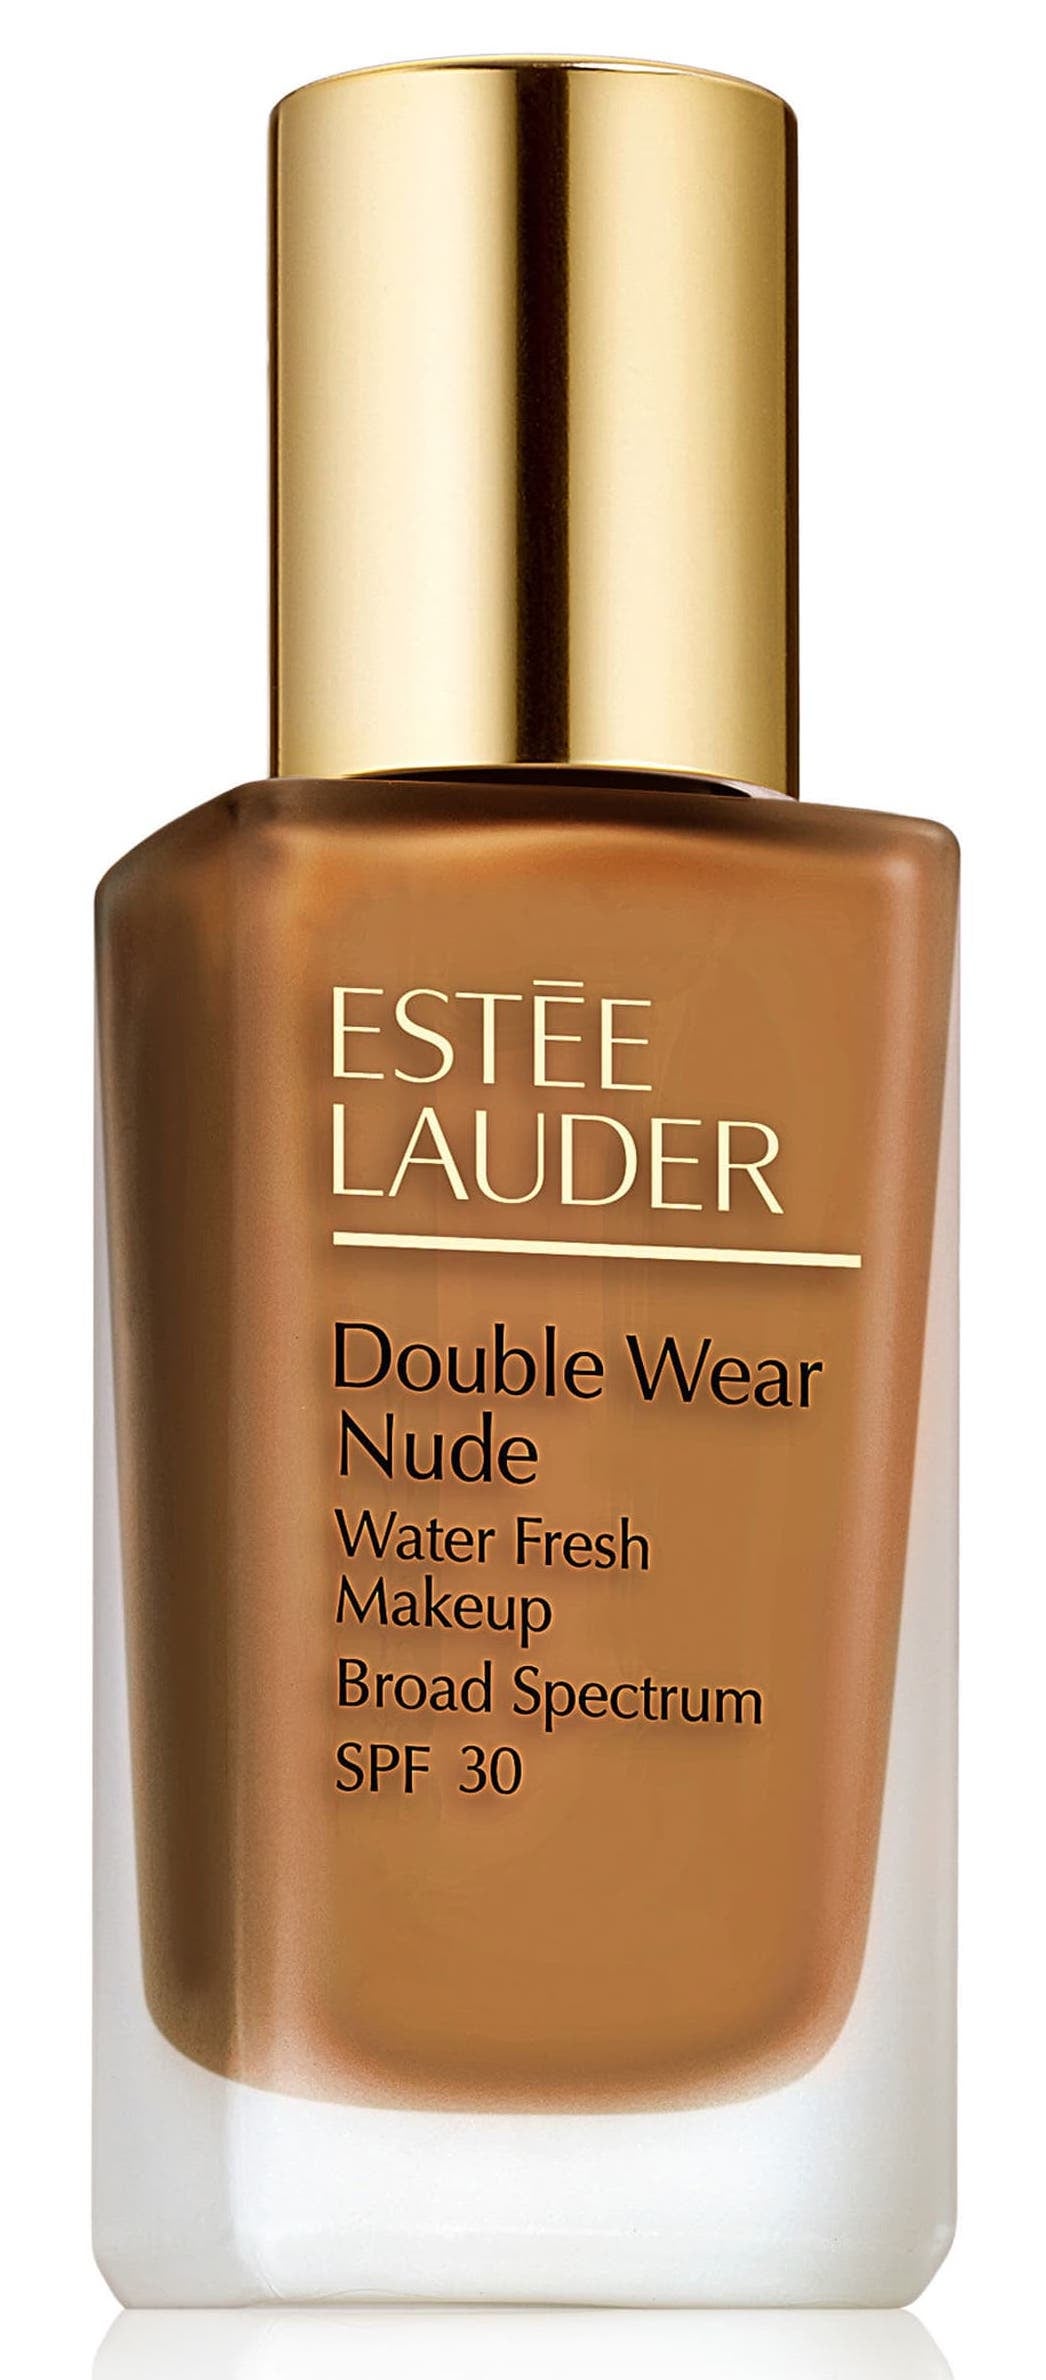 Estee Lauder Double Wear Nude Water Fresh Makeup Broad Spectrum SPF 30